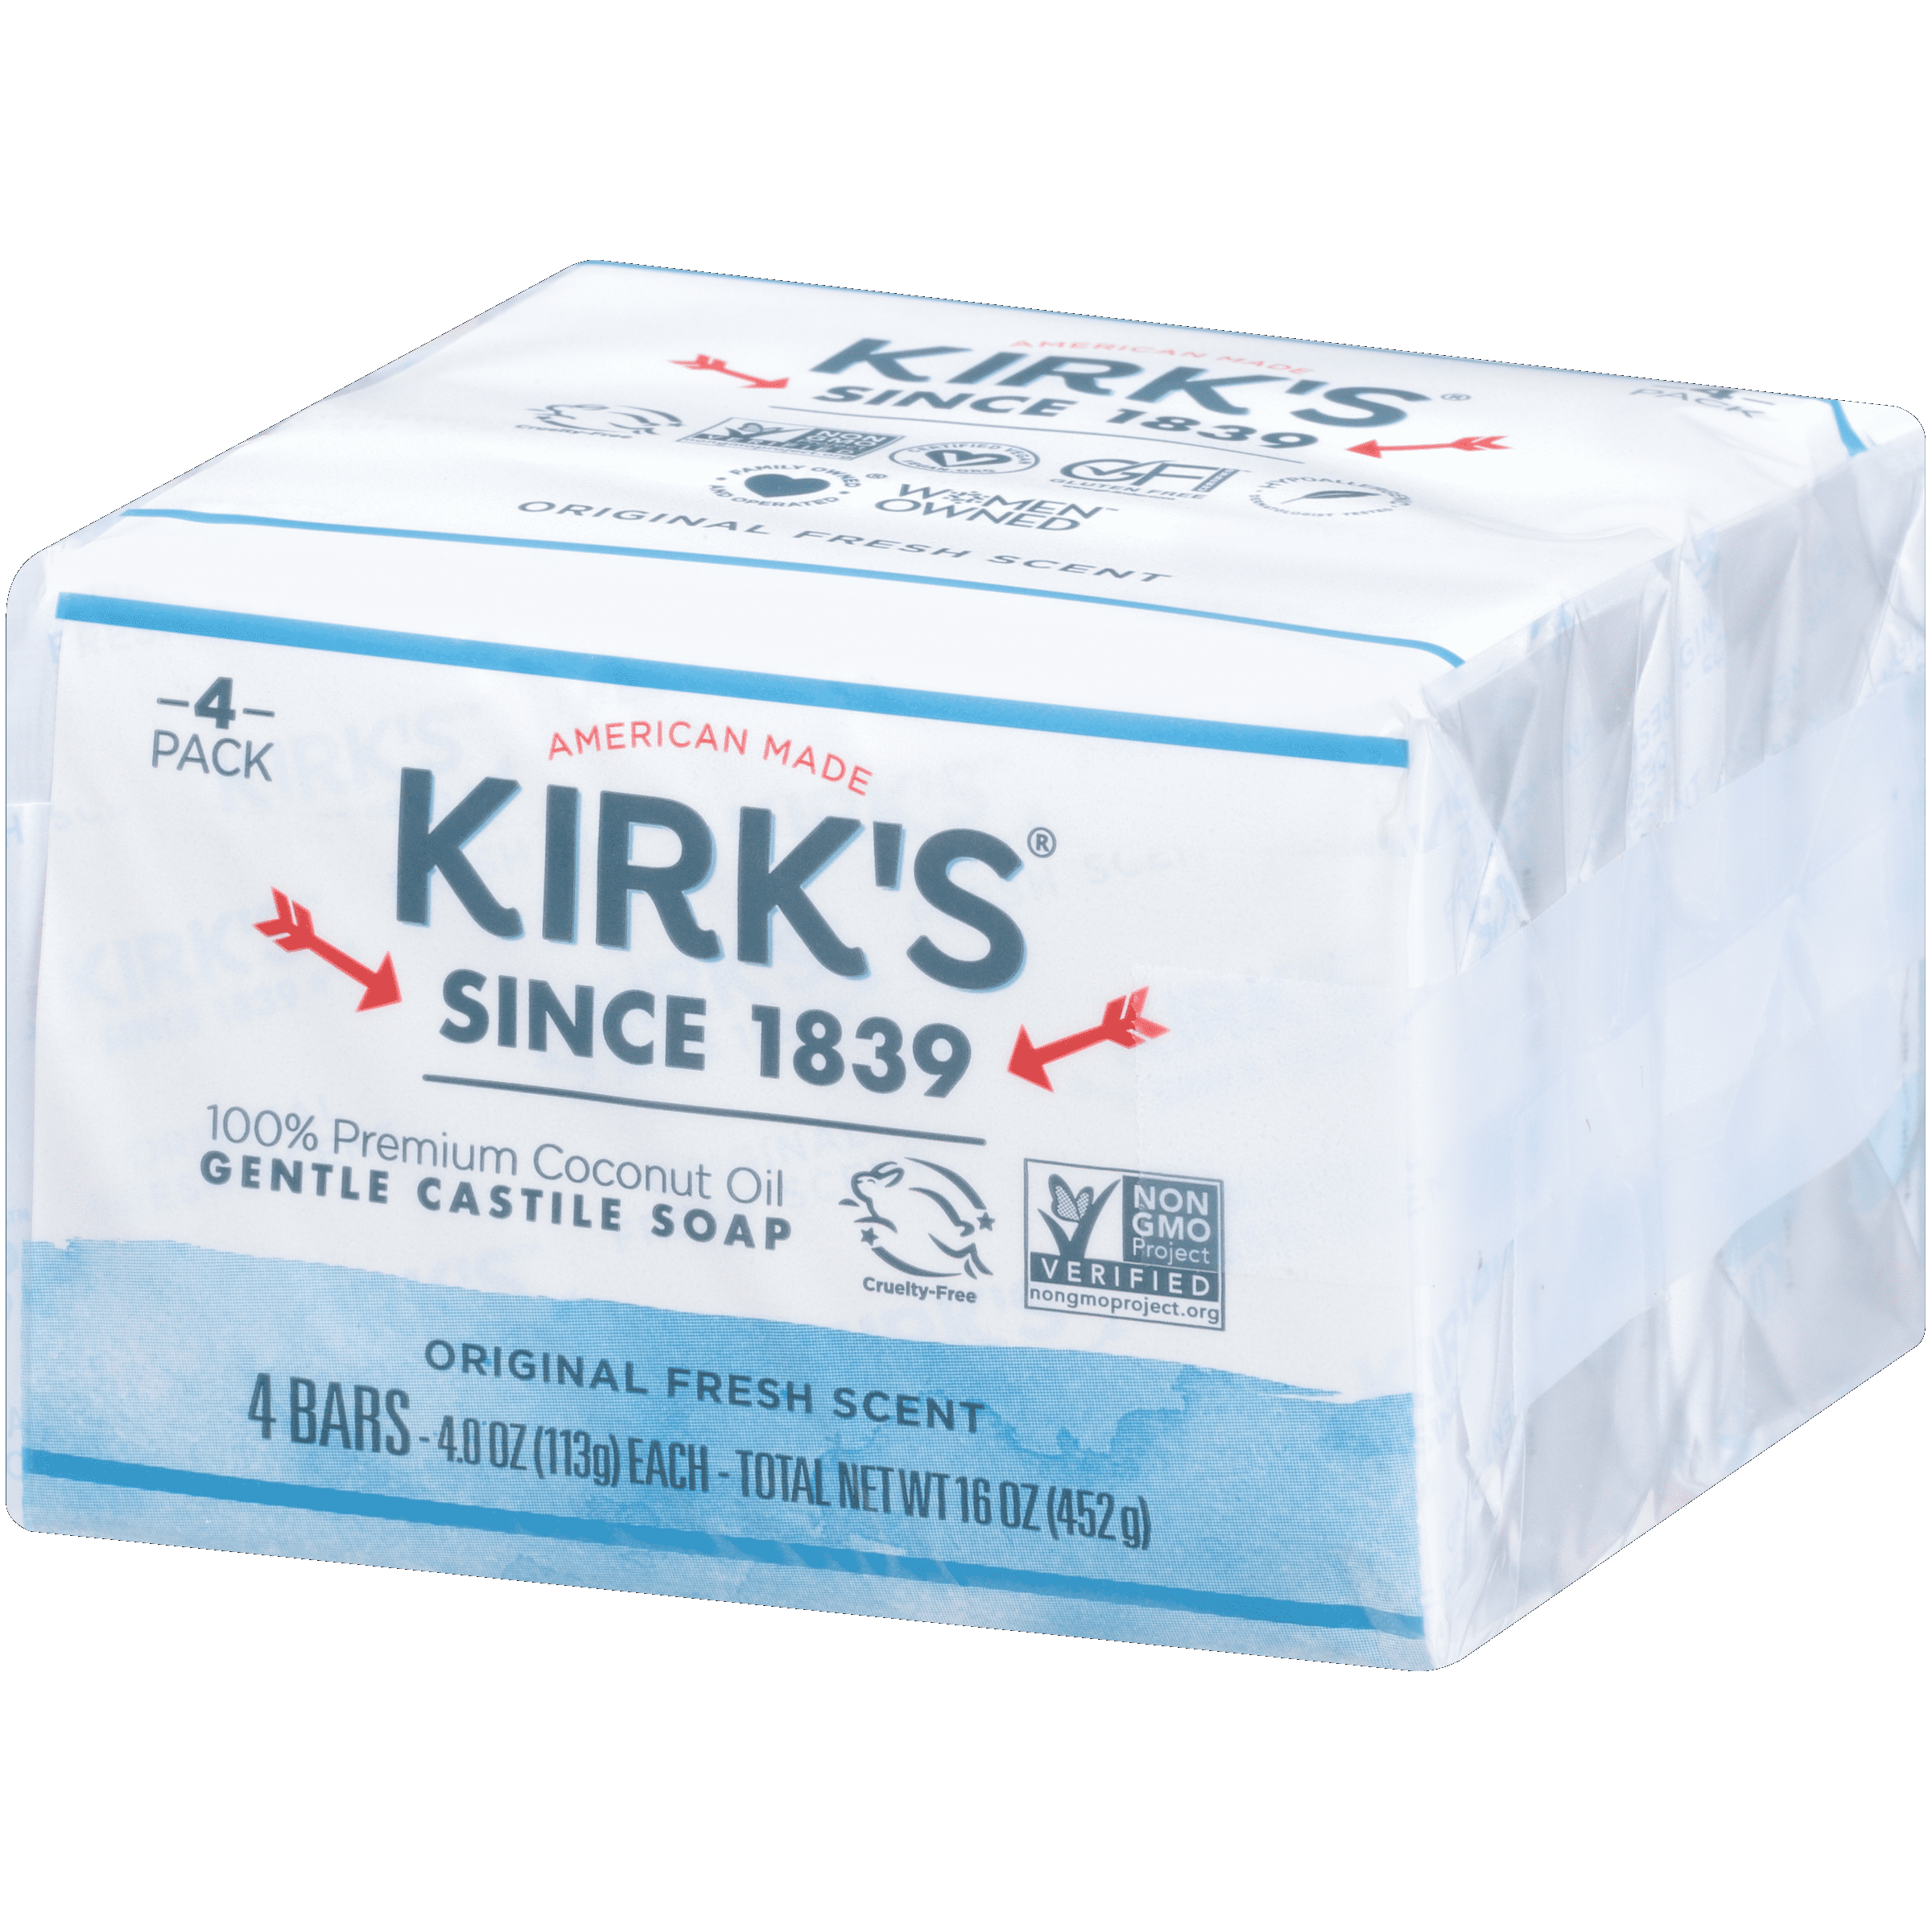 Kirk's Best Bar Soaps, Natural Gentle Castile Soaps